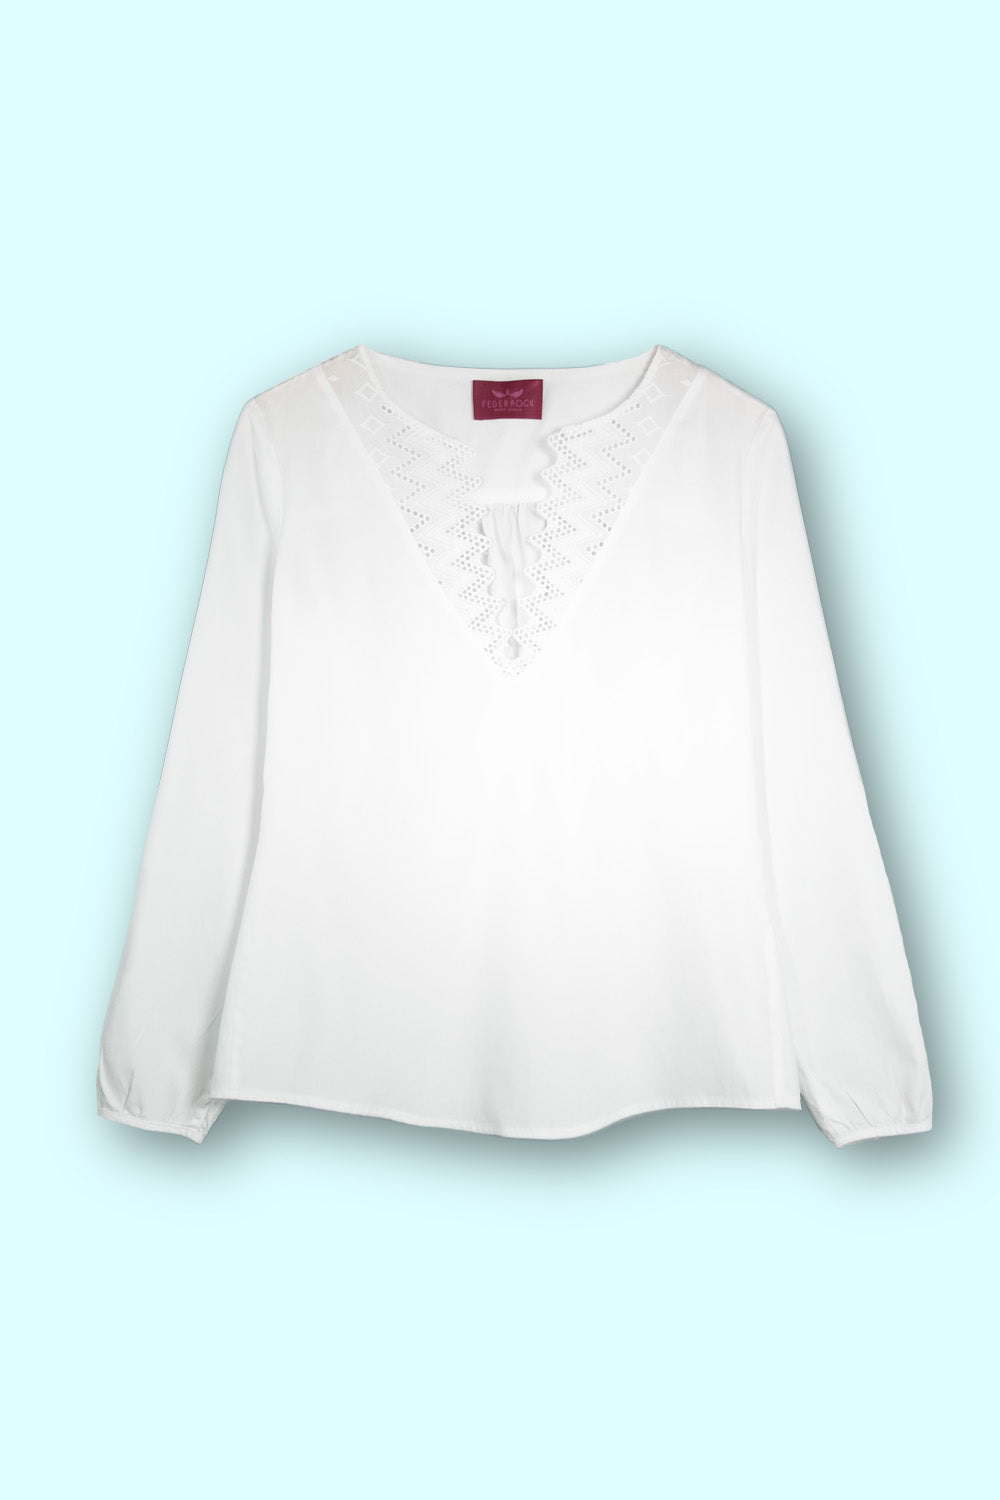 Produktbild Weiße Bluse mit Spitzenkragen von FederRock